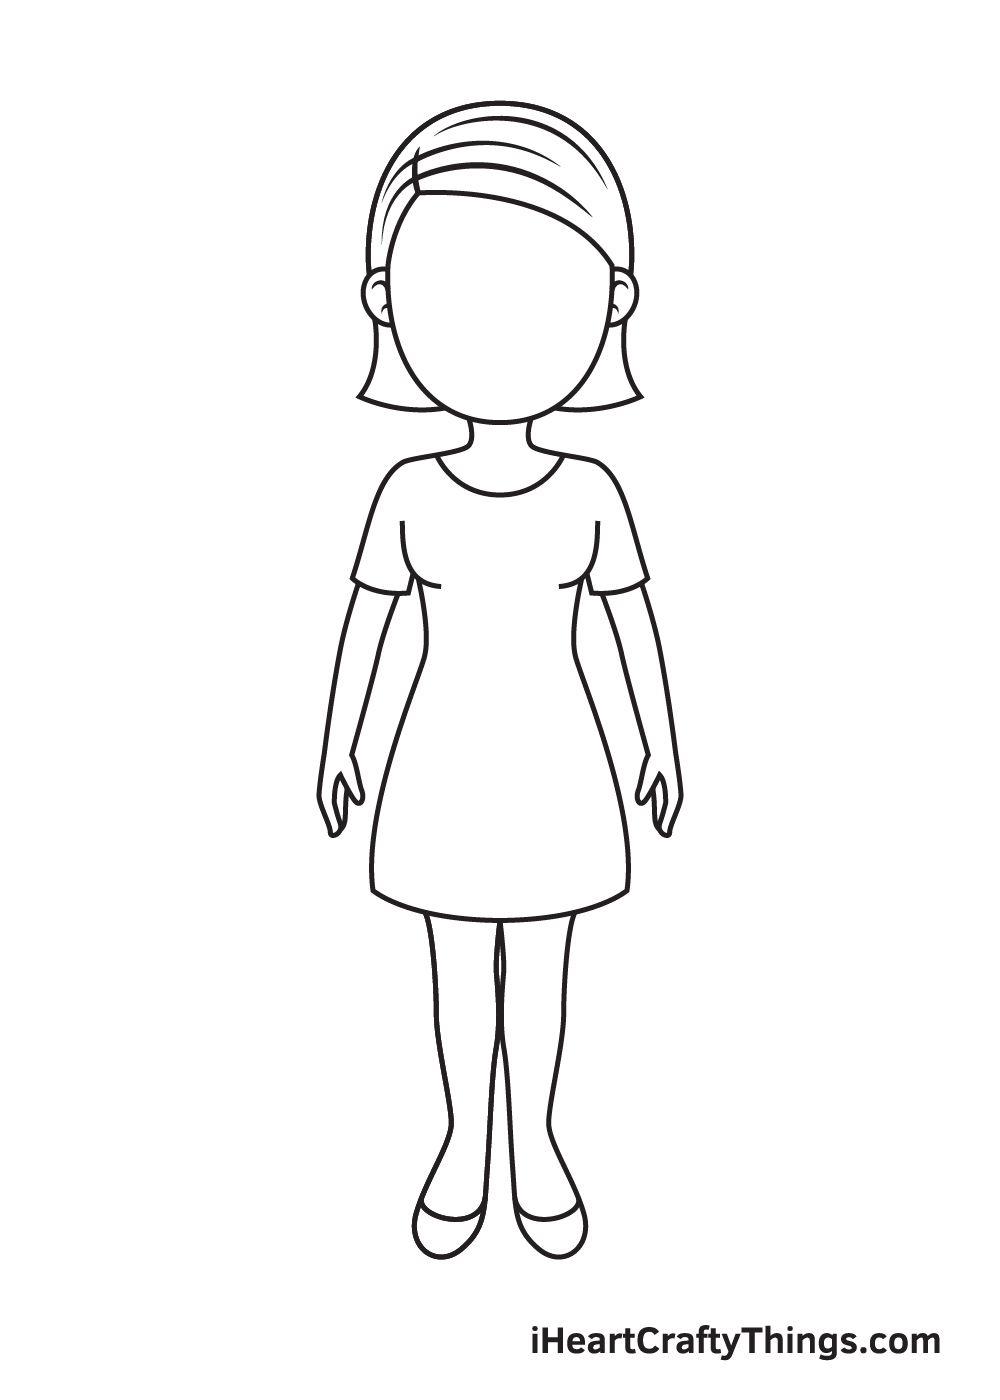 Woman DRAWING – STEP 8 - Hướng dẫn chi tiết cách vẽ cô gái đơn giản với 9 bước cơ bản